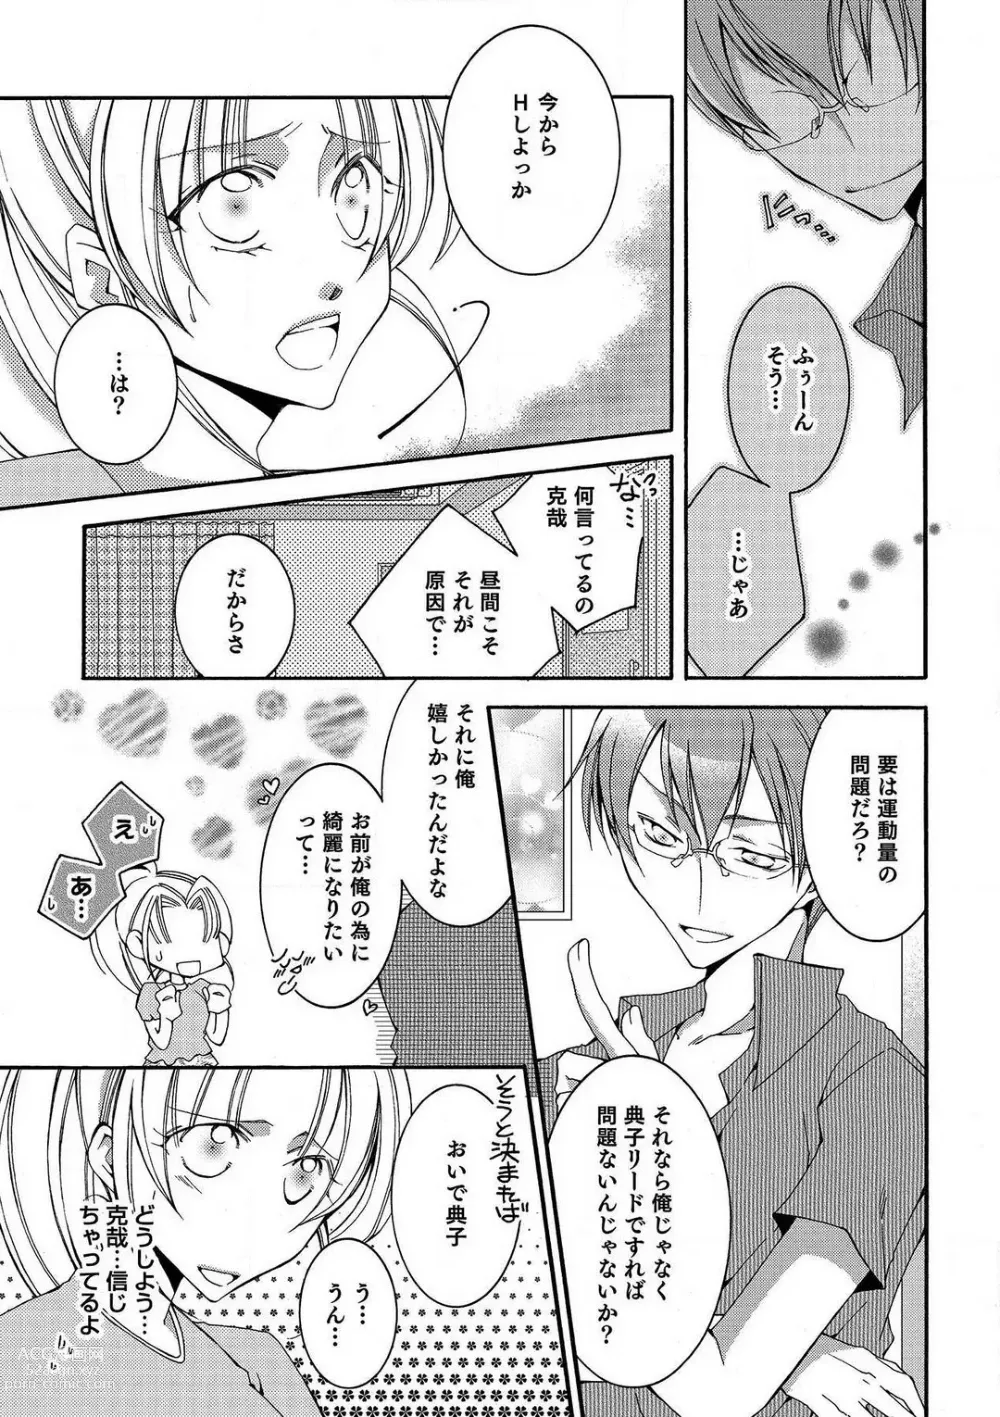 Page 14 of manga LOVE×PLAY 1-4